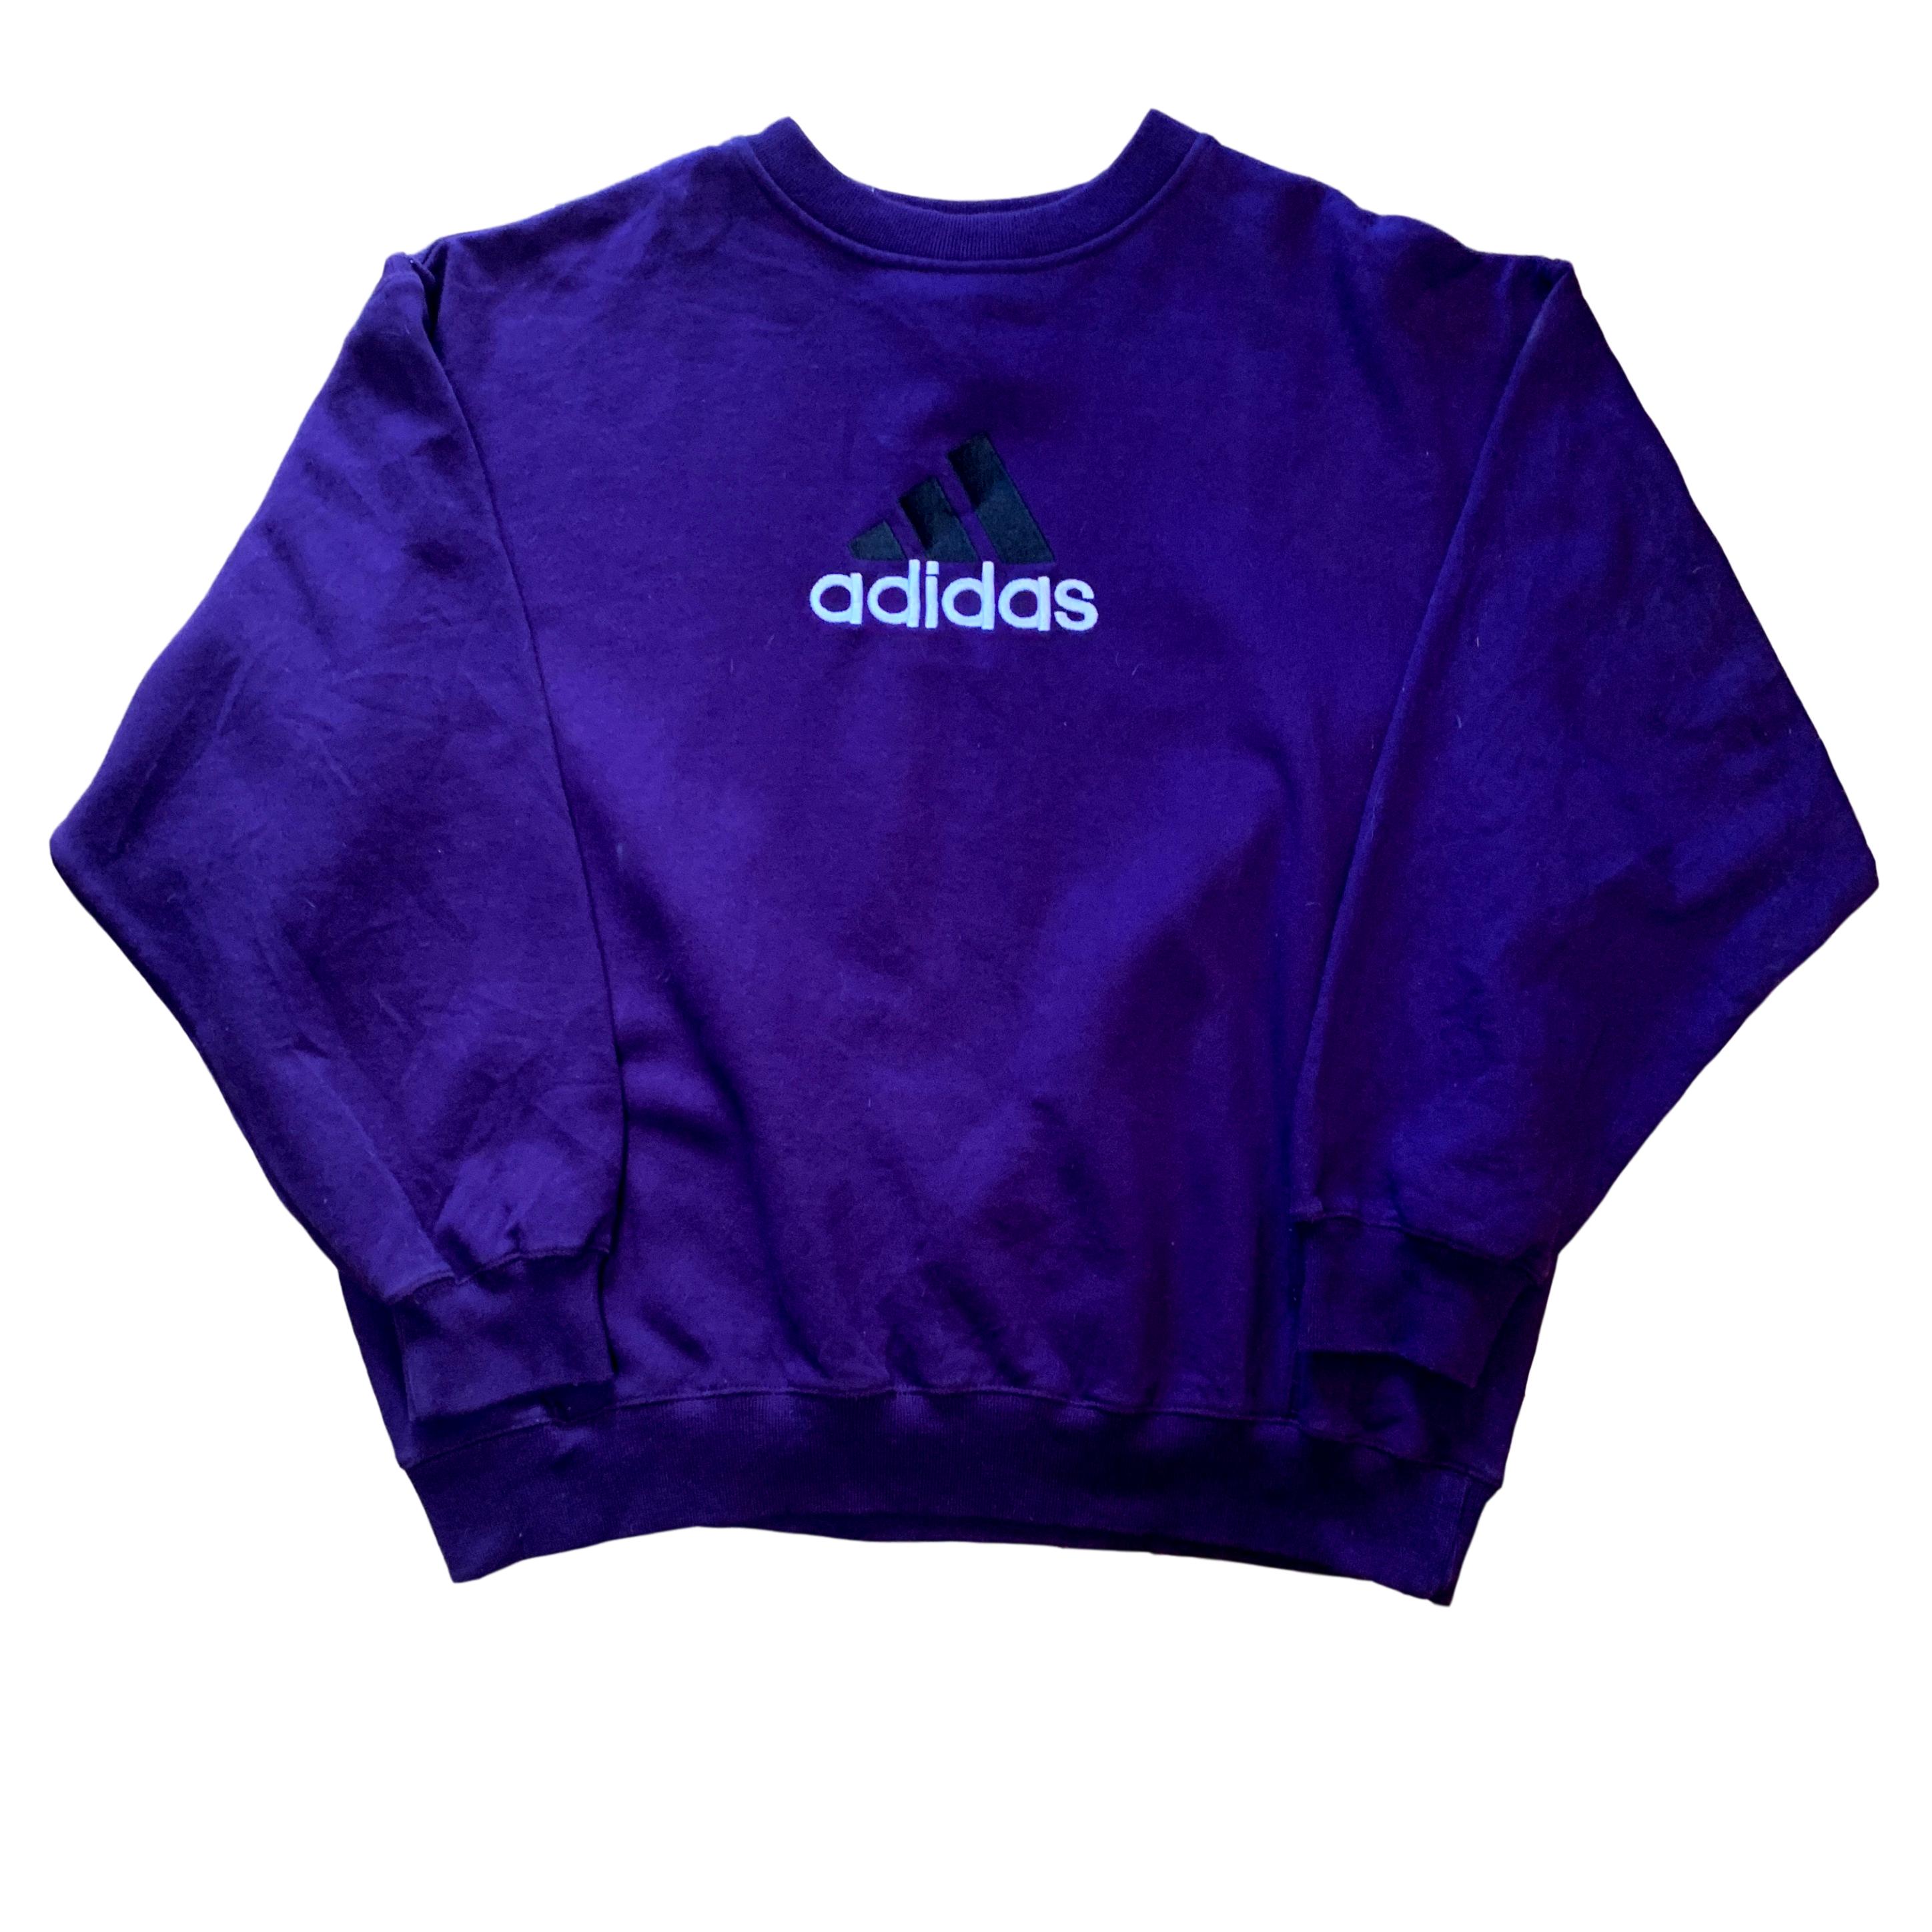 Vintage Adidas Purple Sweatshirt (L)